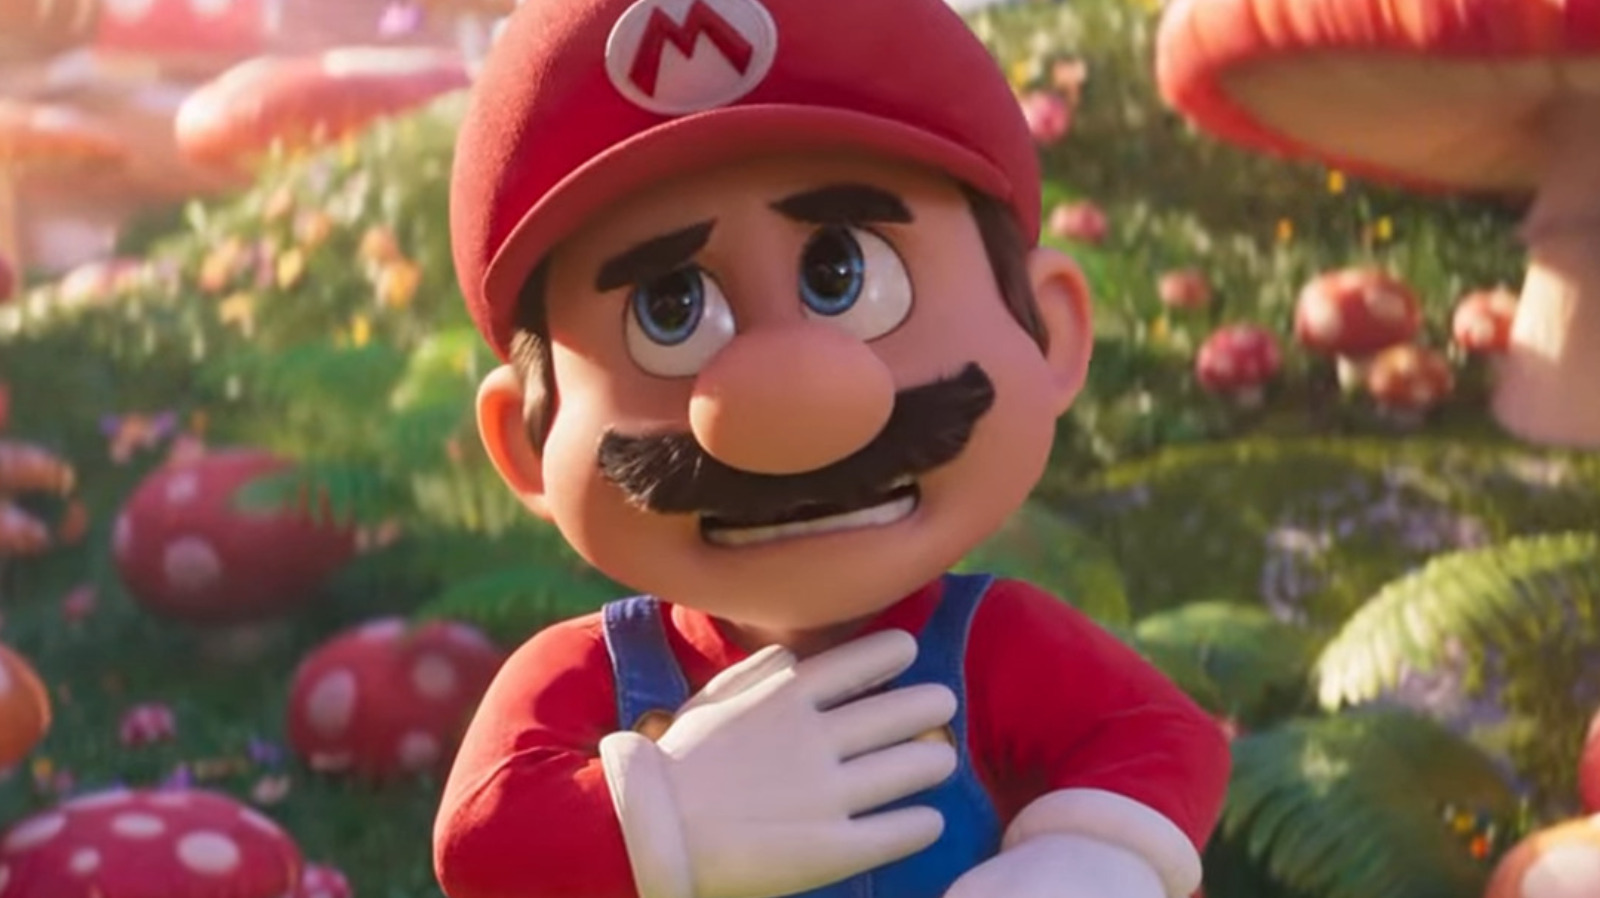 ИИ сделал трейлер к фильму Super Mario Bros, действие которого происходит в 1950-х годах, и это странно